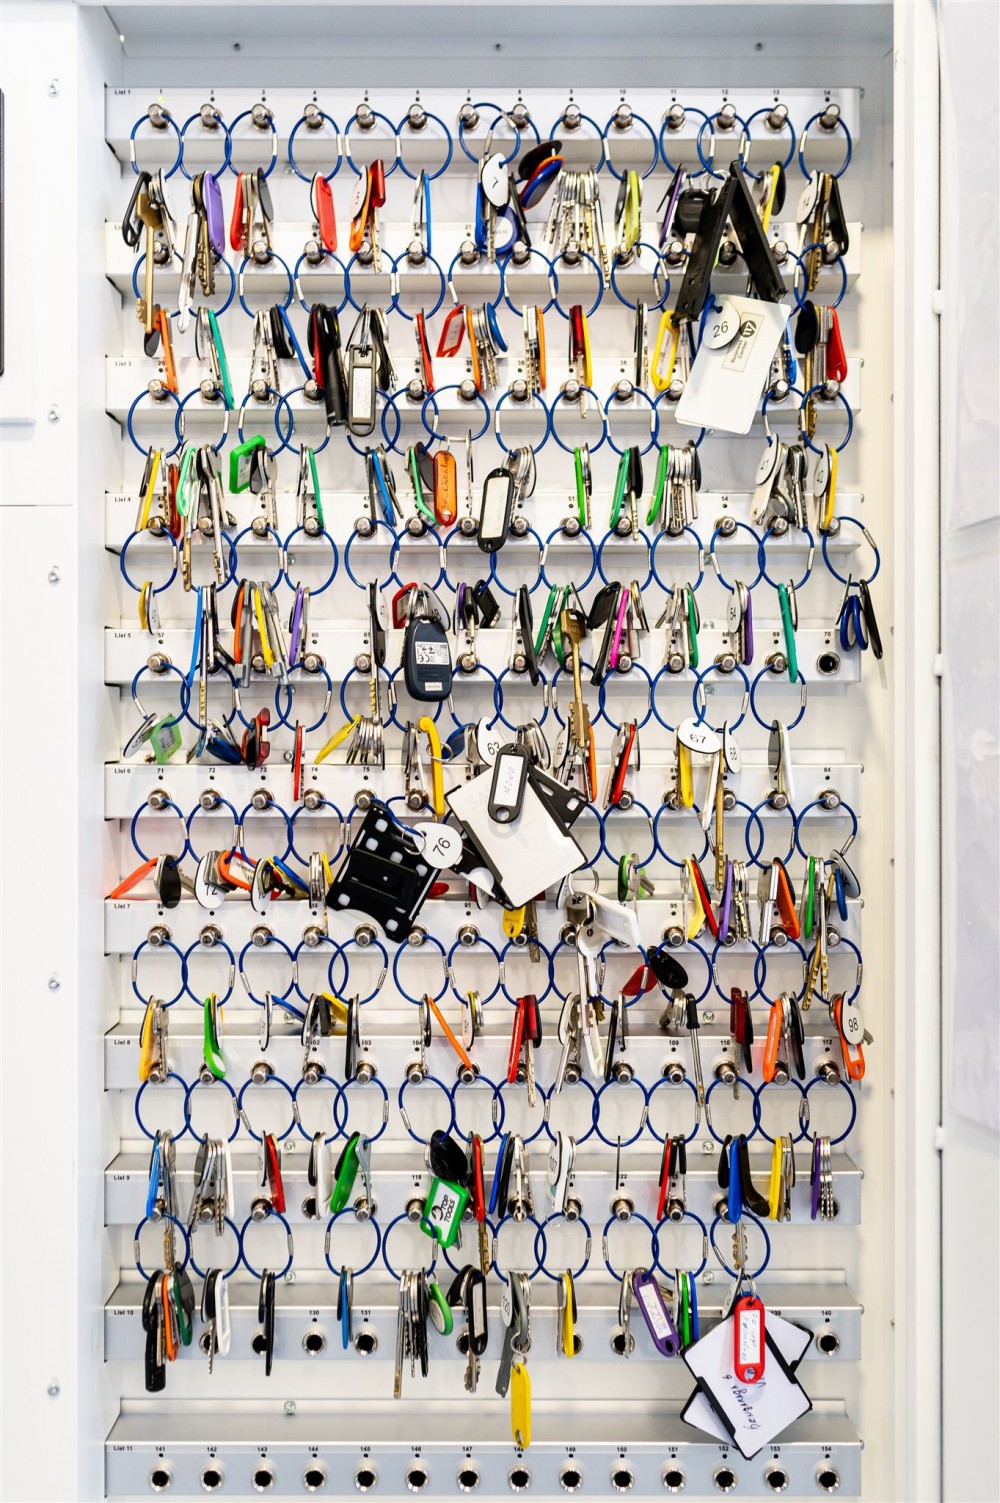 Electronic key cabinet